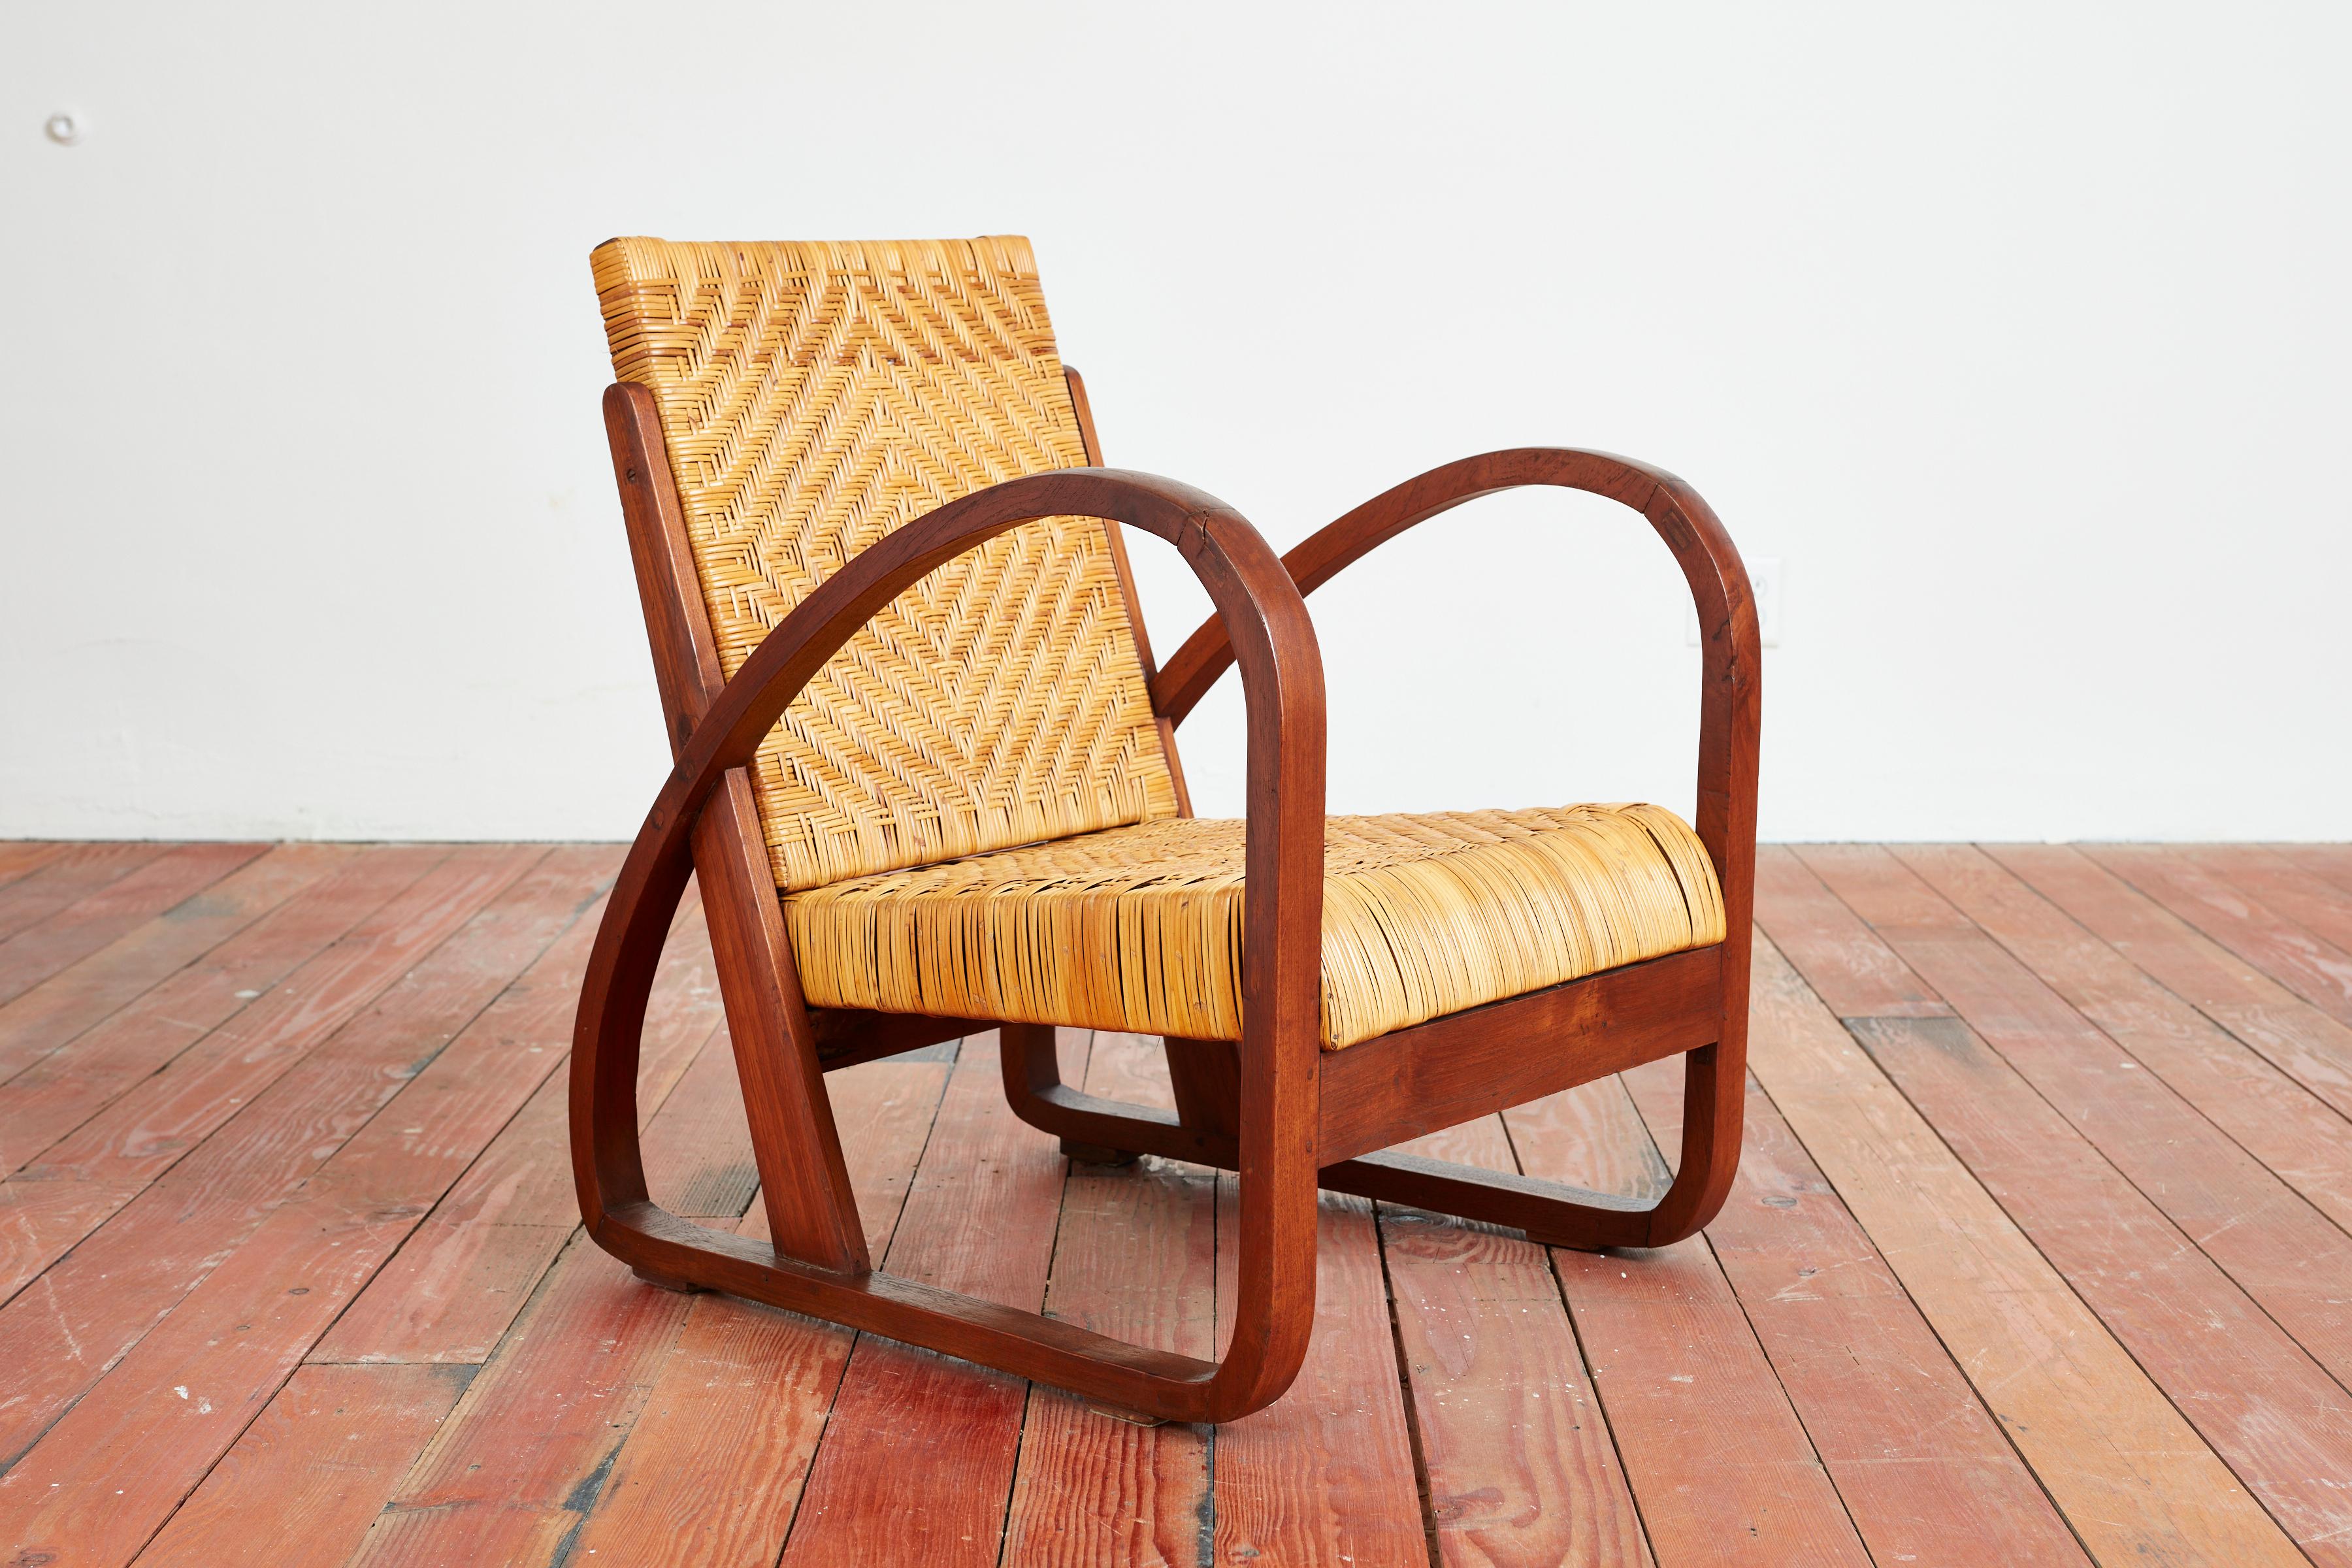 wicker wooden chair